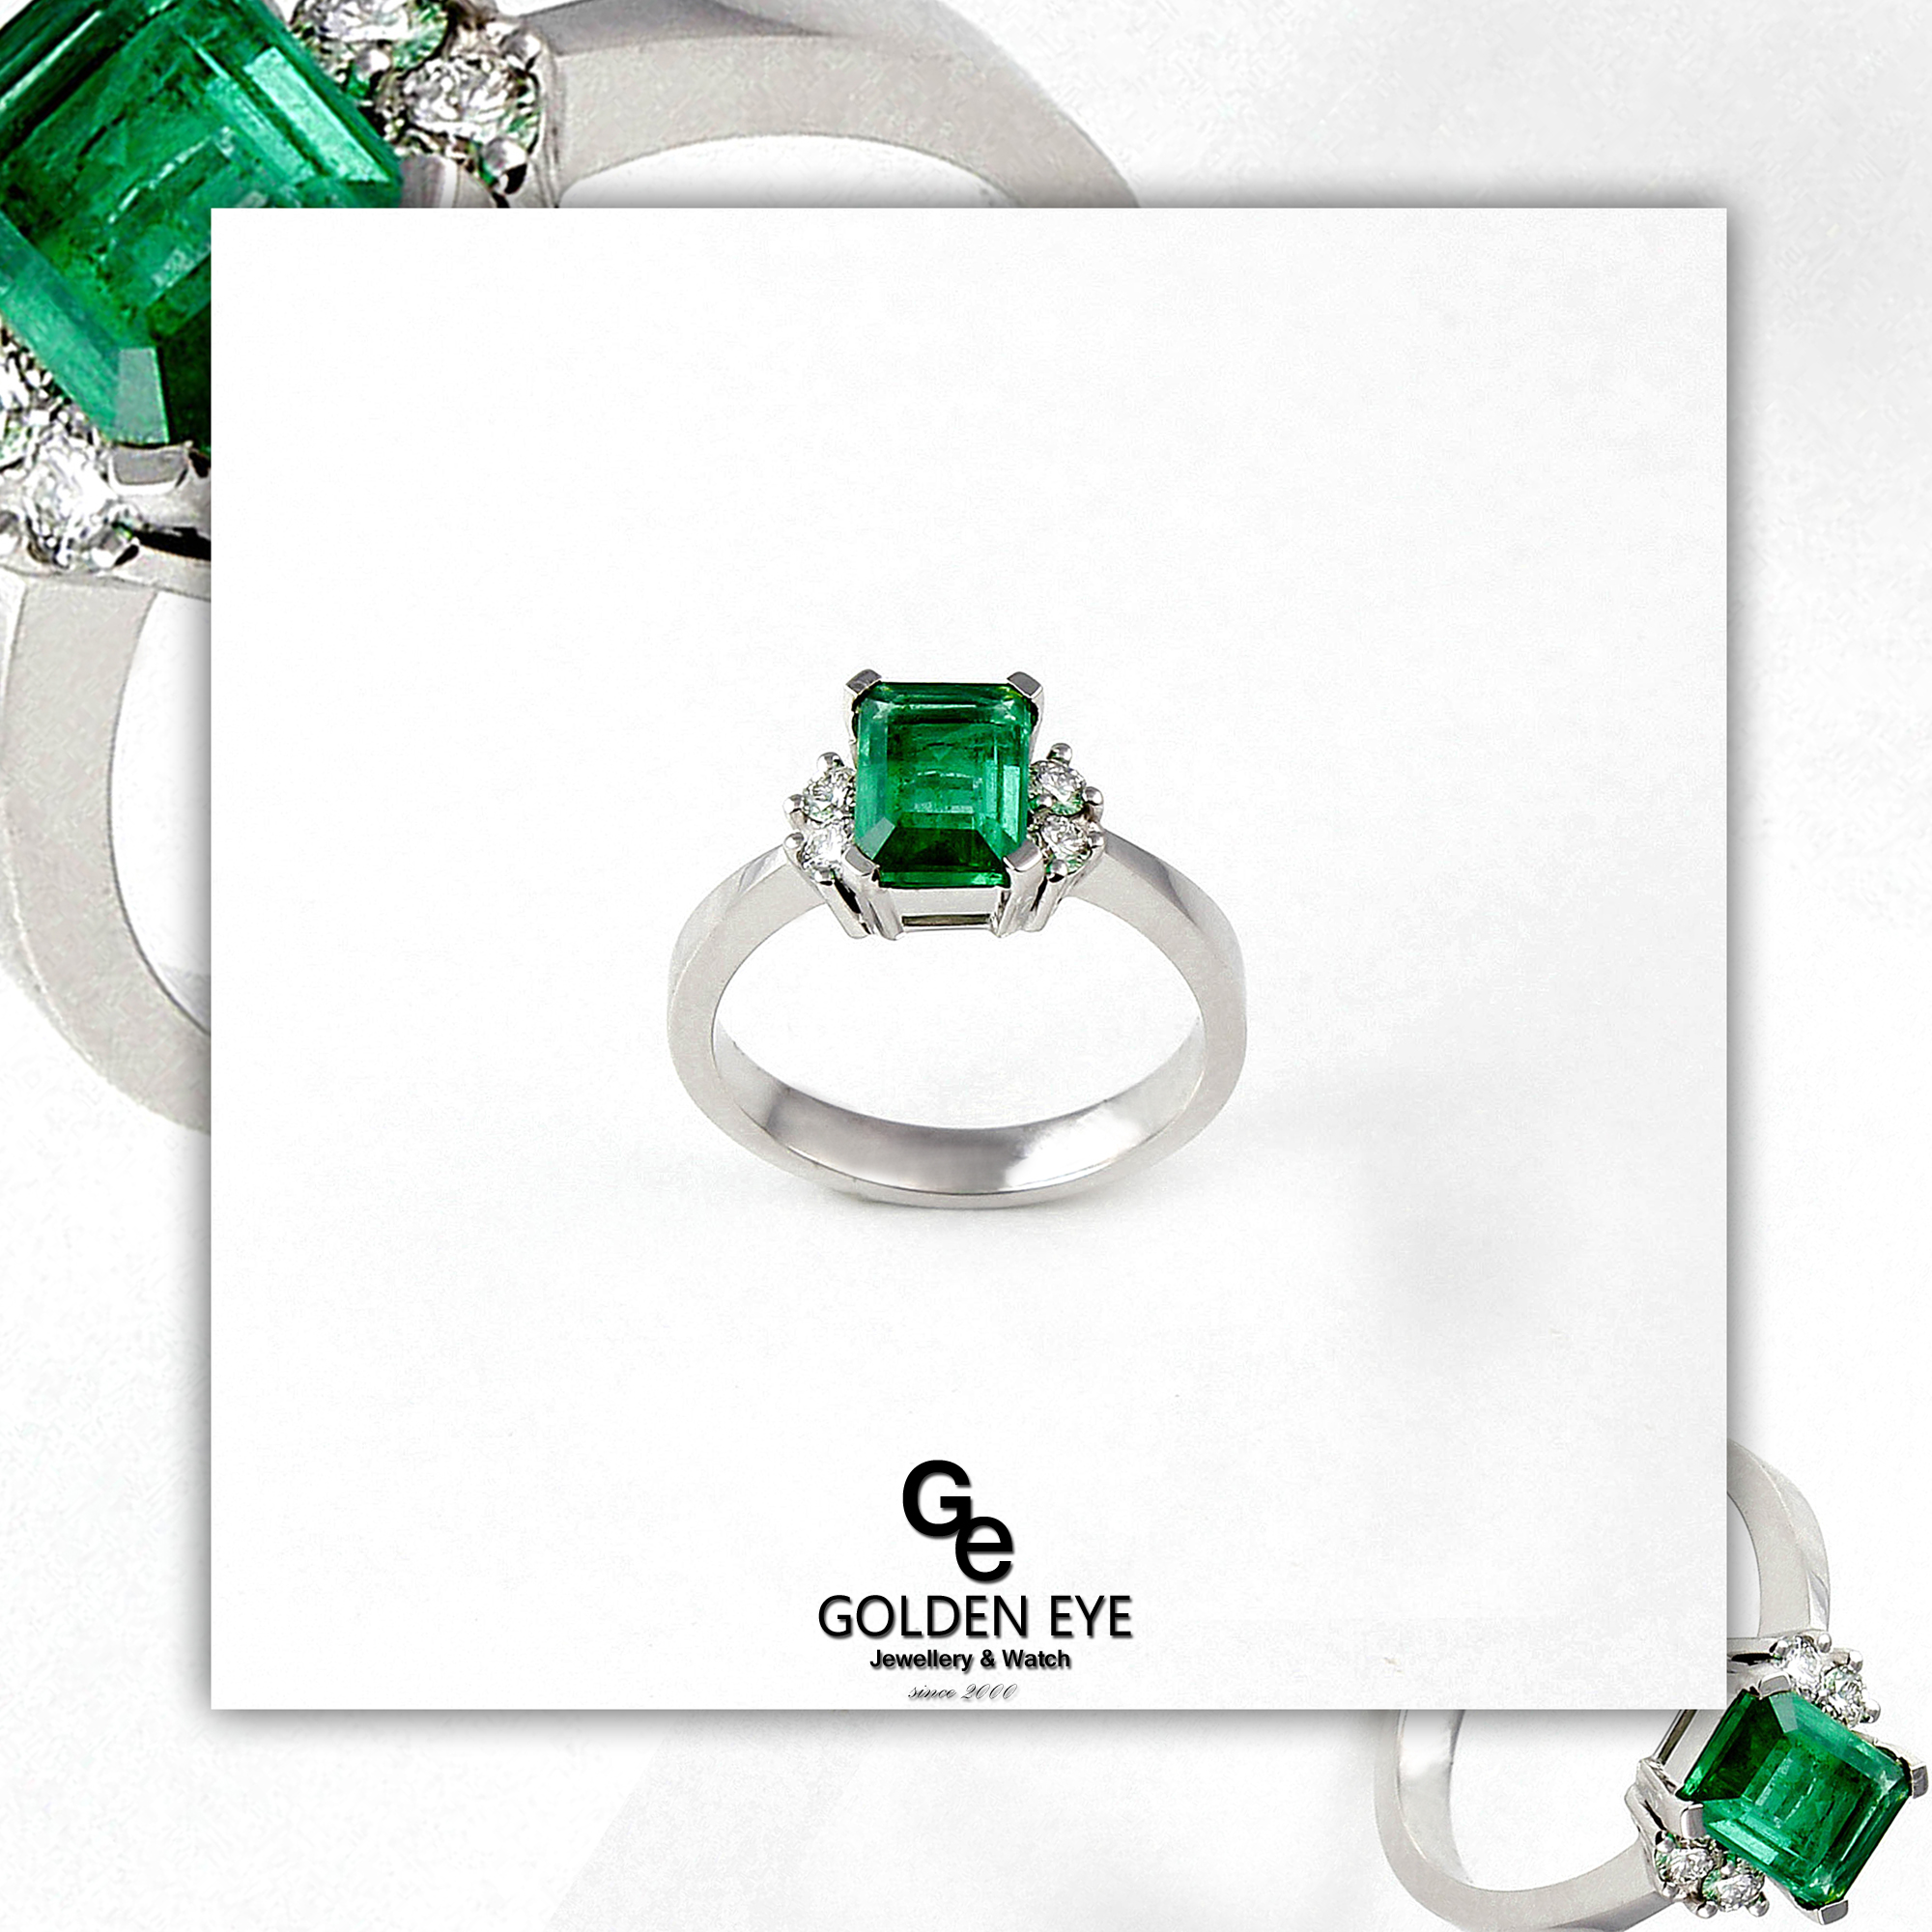 R034A fehérarany gyűrű smaragddal és gyémántokkal